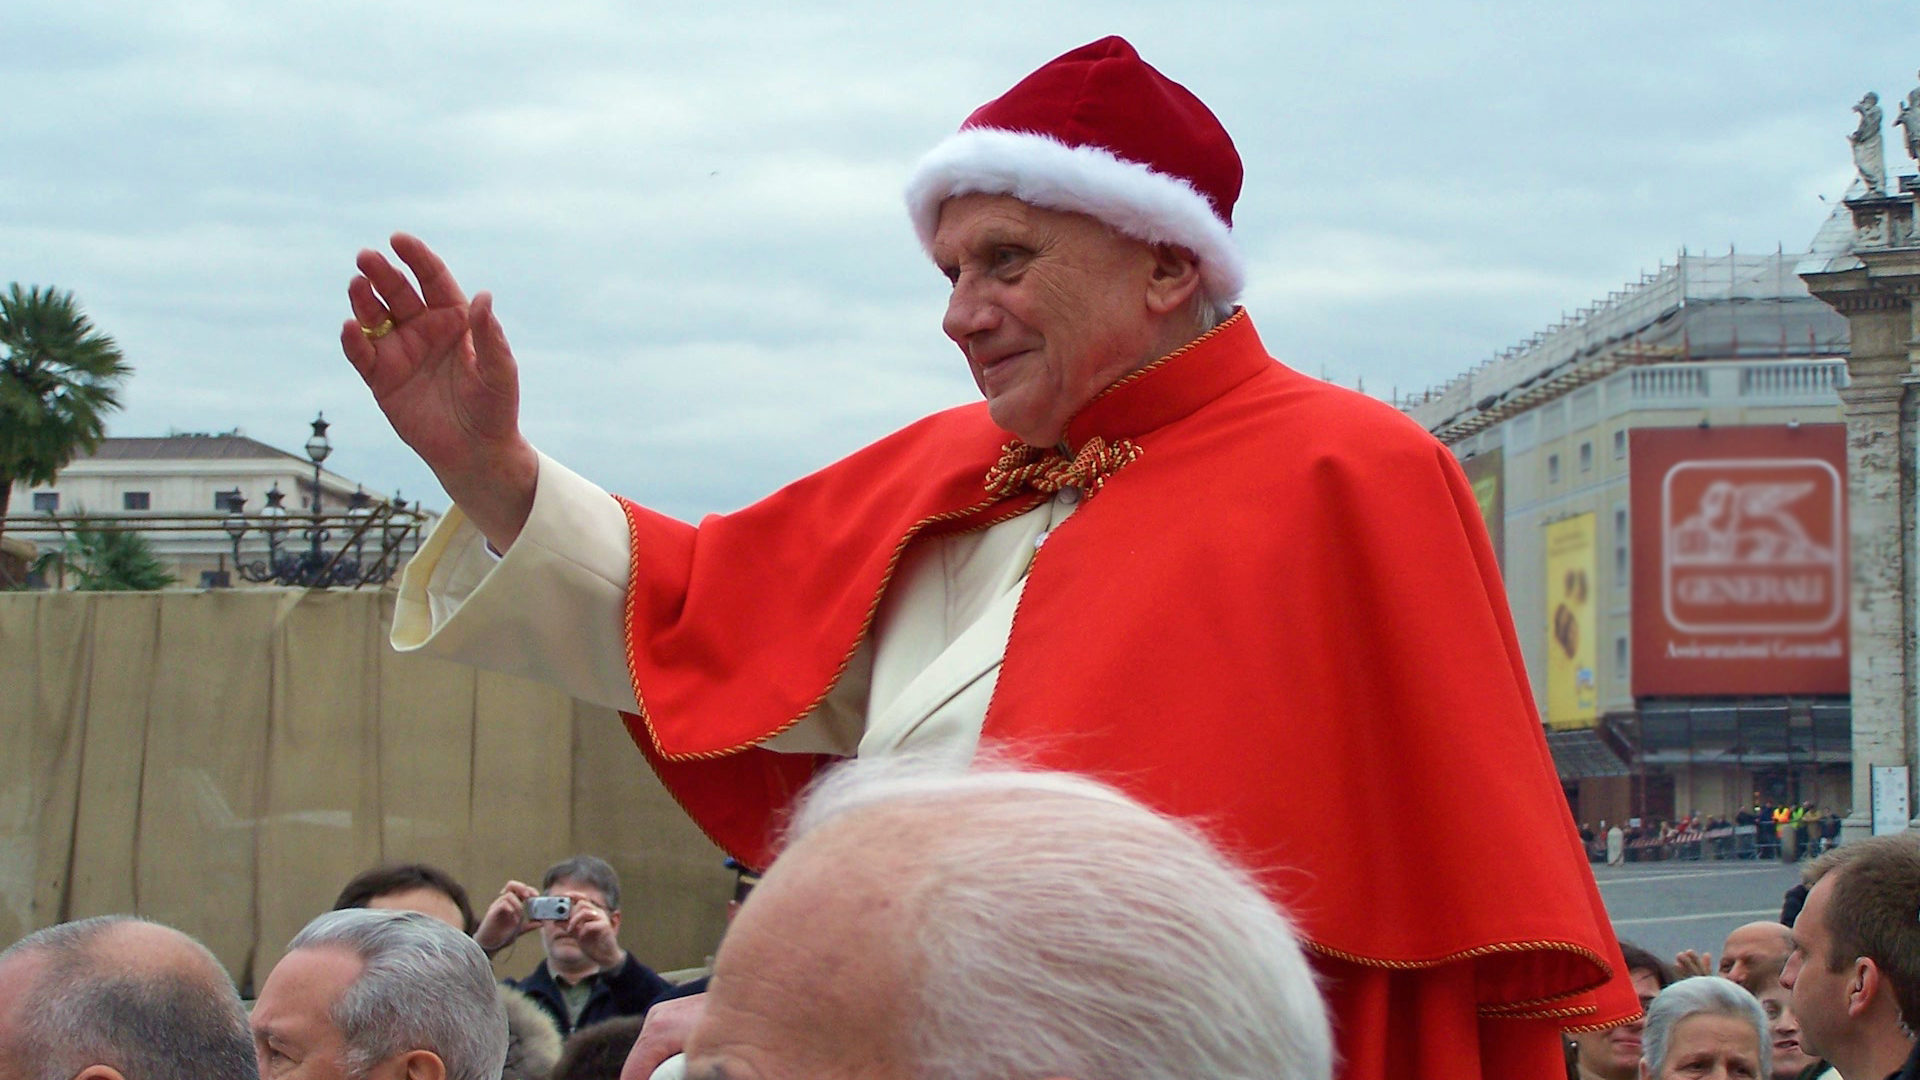 Le pape Benoit XVI portant camauro (bonnet) et tabarro (cape) en 2005 | Wikimedia Commons - Ash Lux -CC BY 3.0 